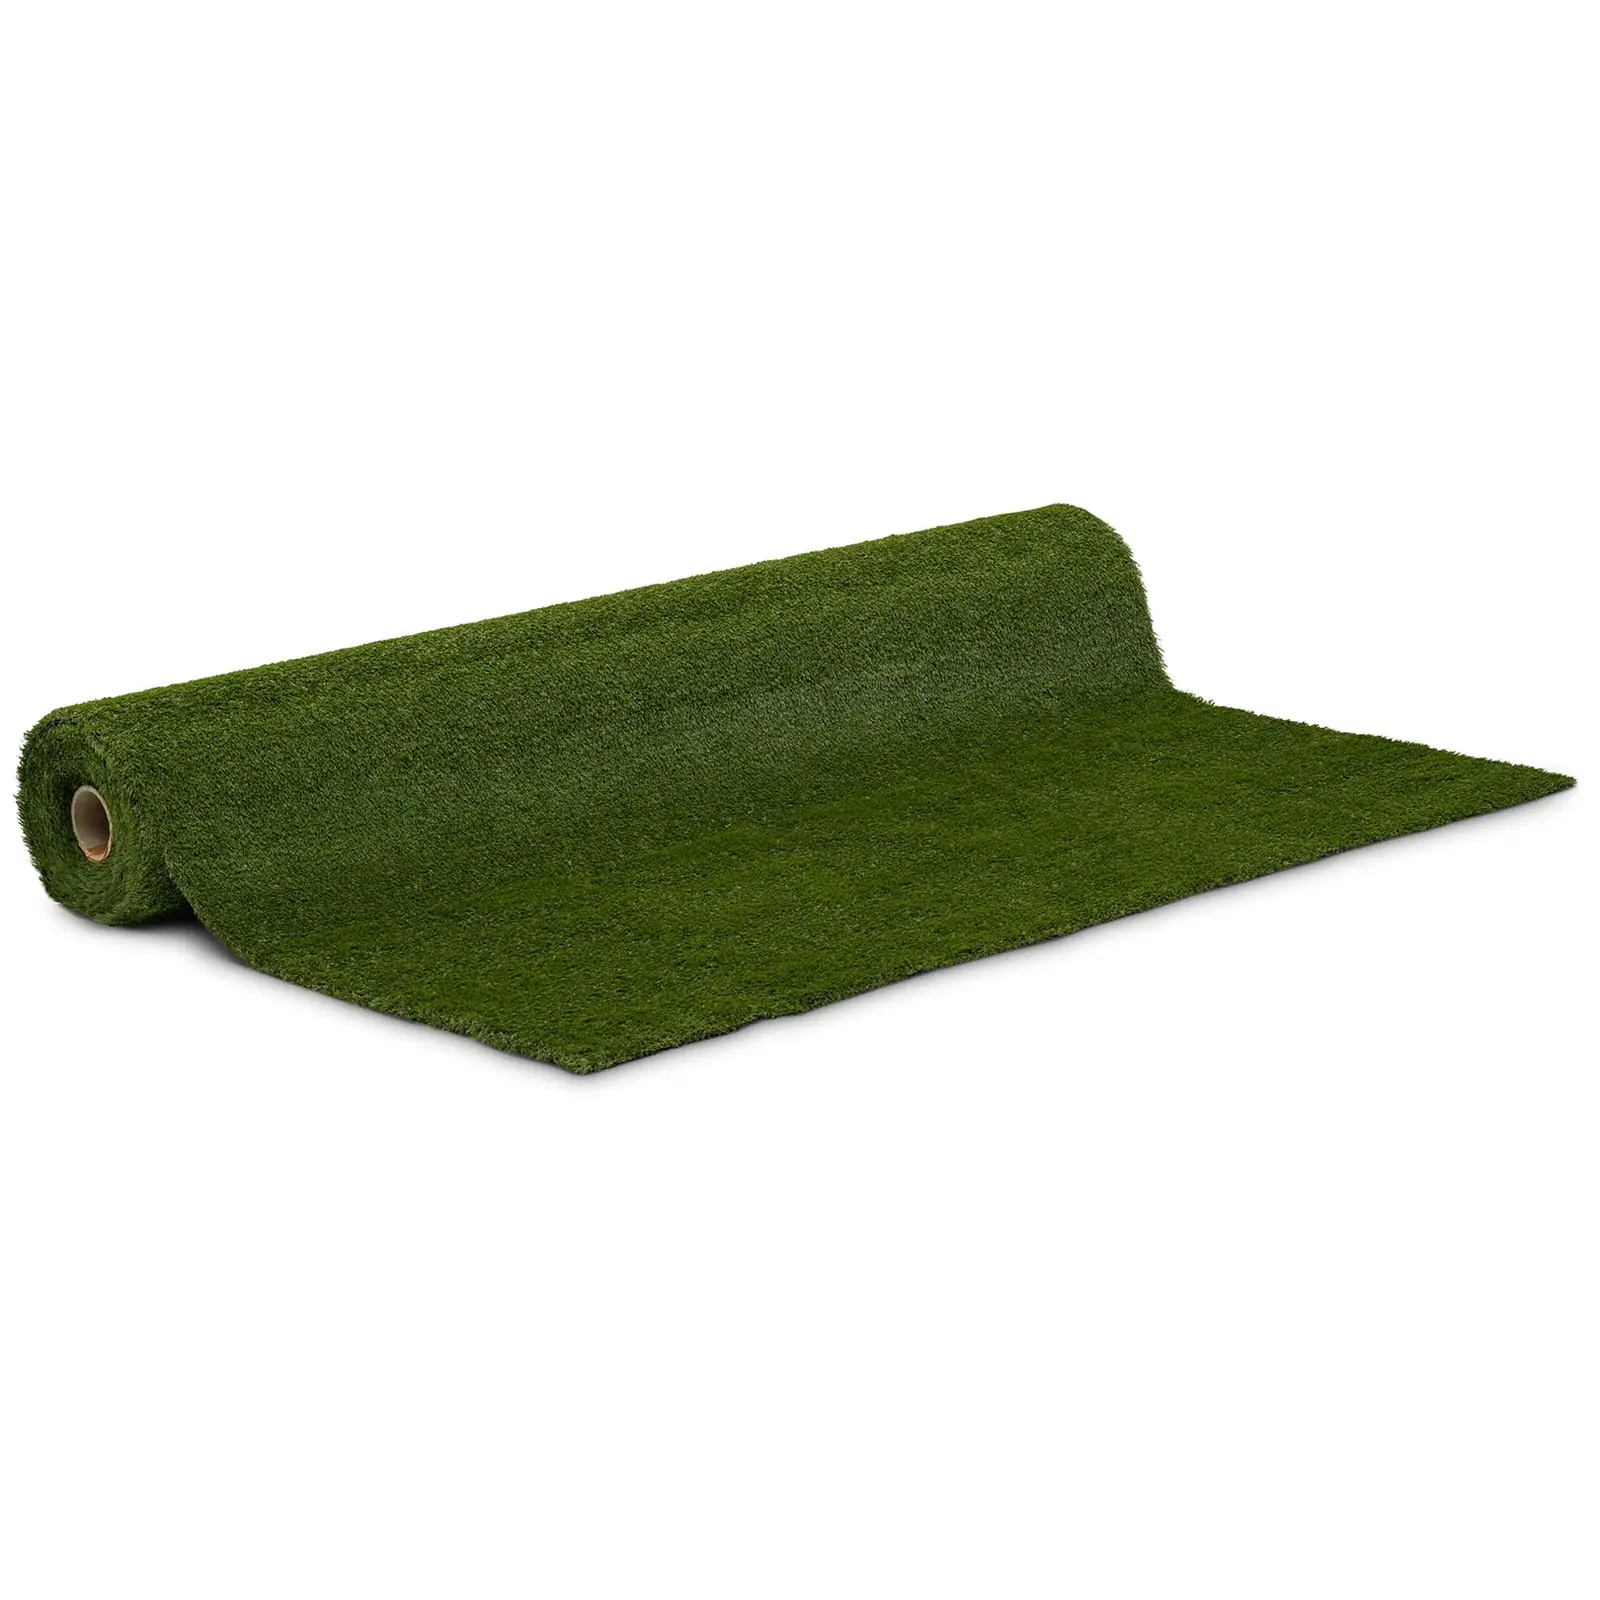 Sztuczna trawa - 1036 x 200 cm - wysokość: 30 mm - szybkość ściegu: 20/10 cm - odporność na promieniowanie UV